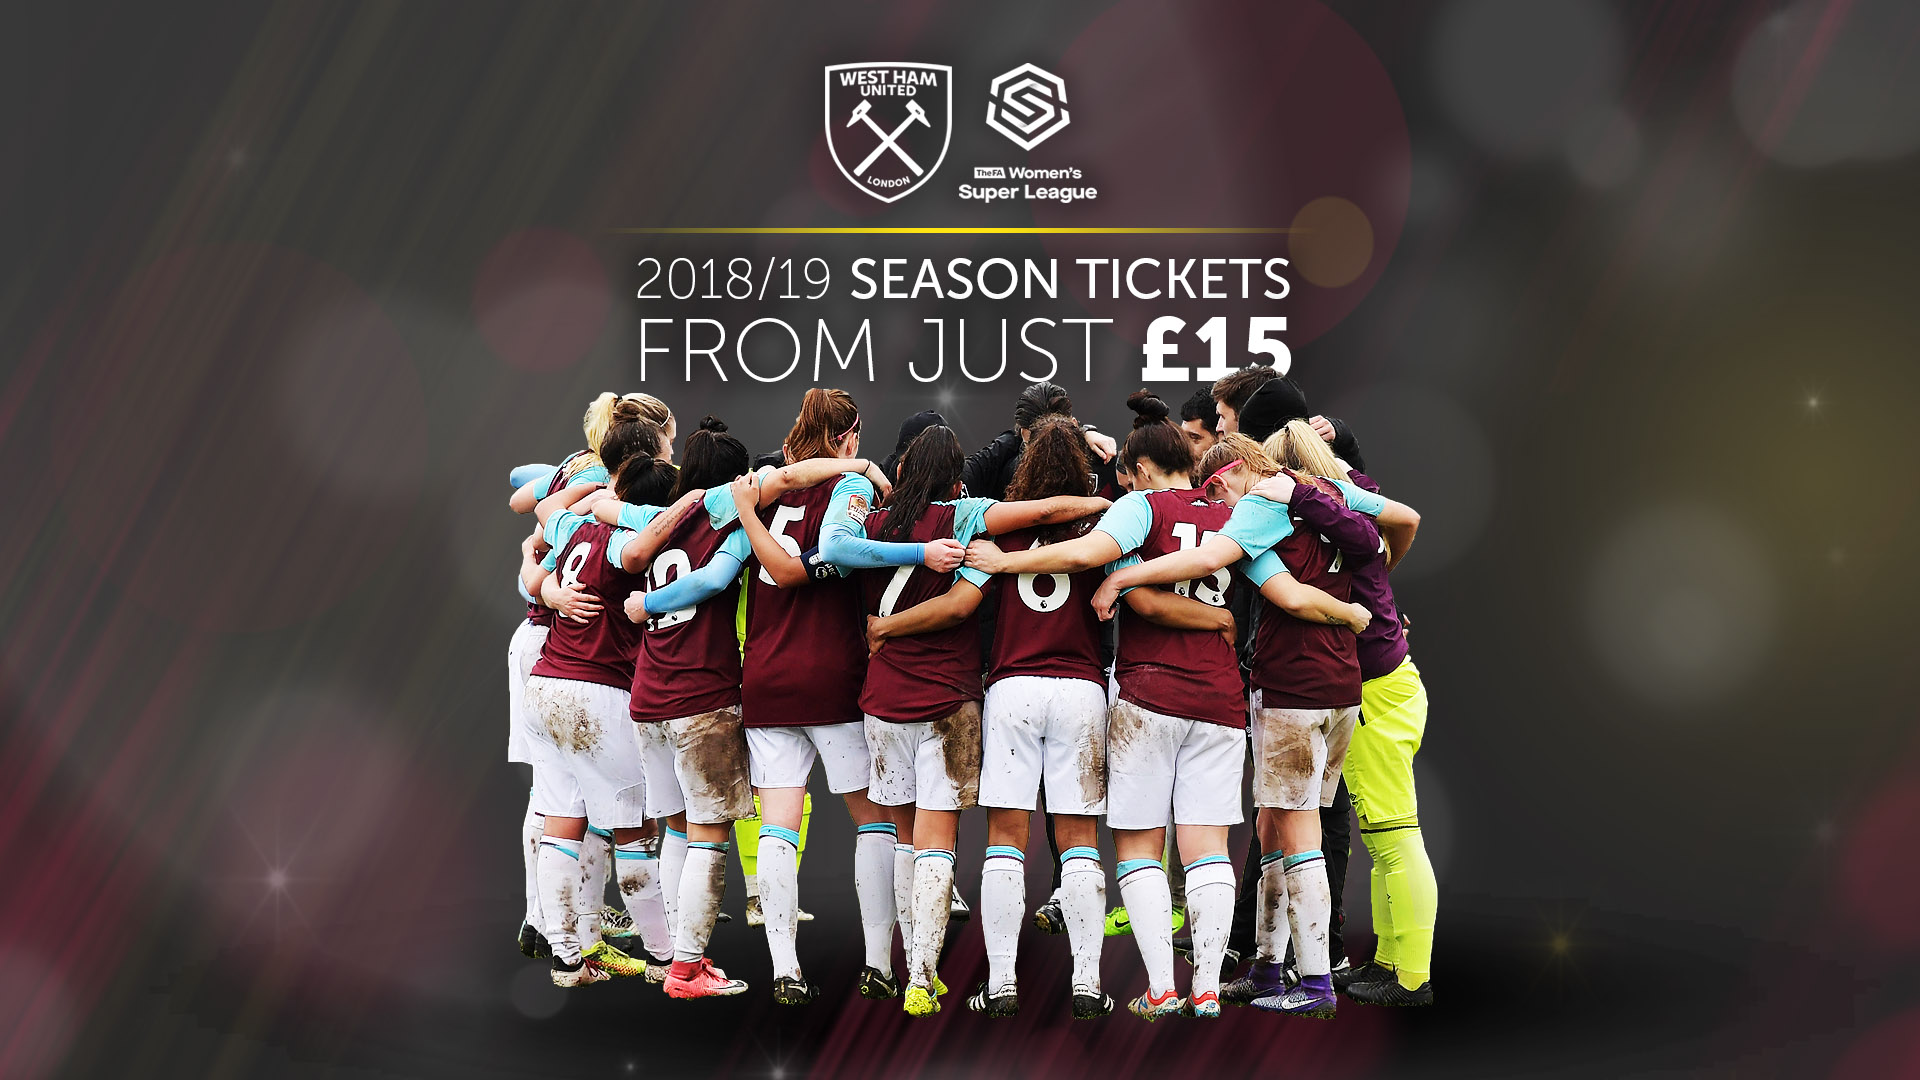 West Ham ladies season tickets